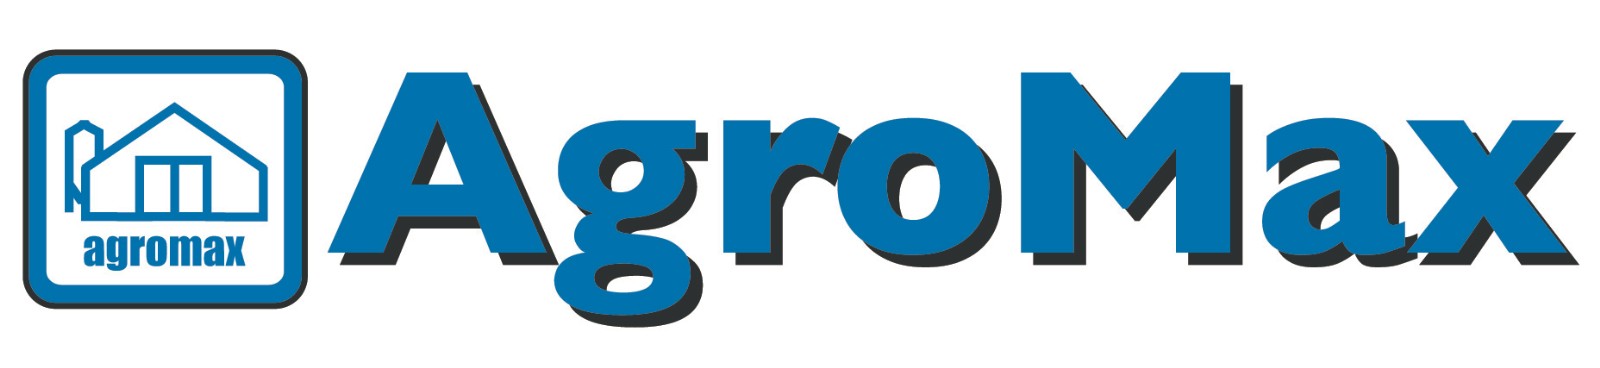 Agromax logo